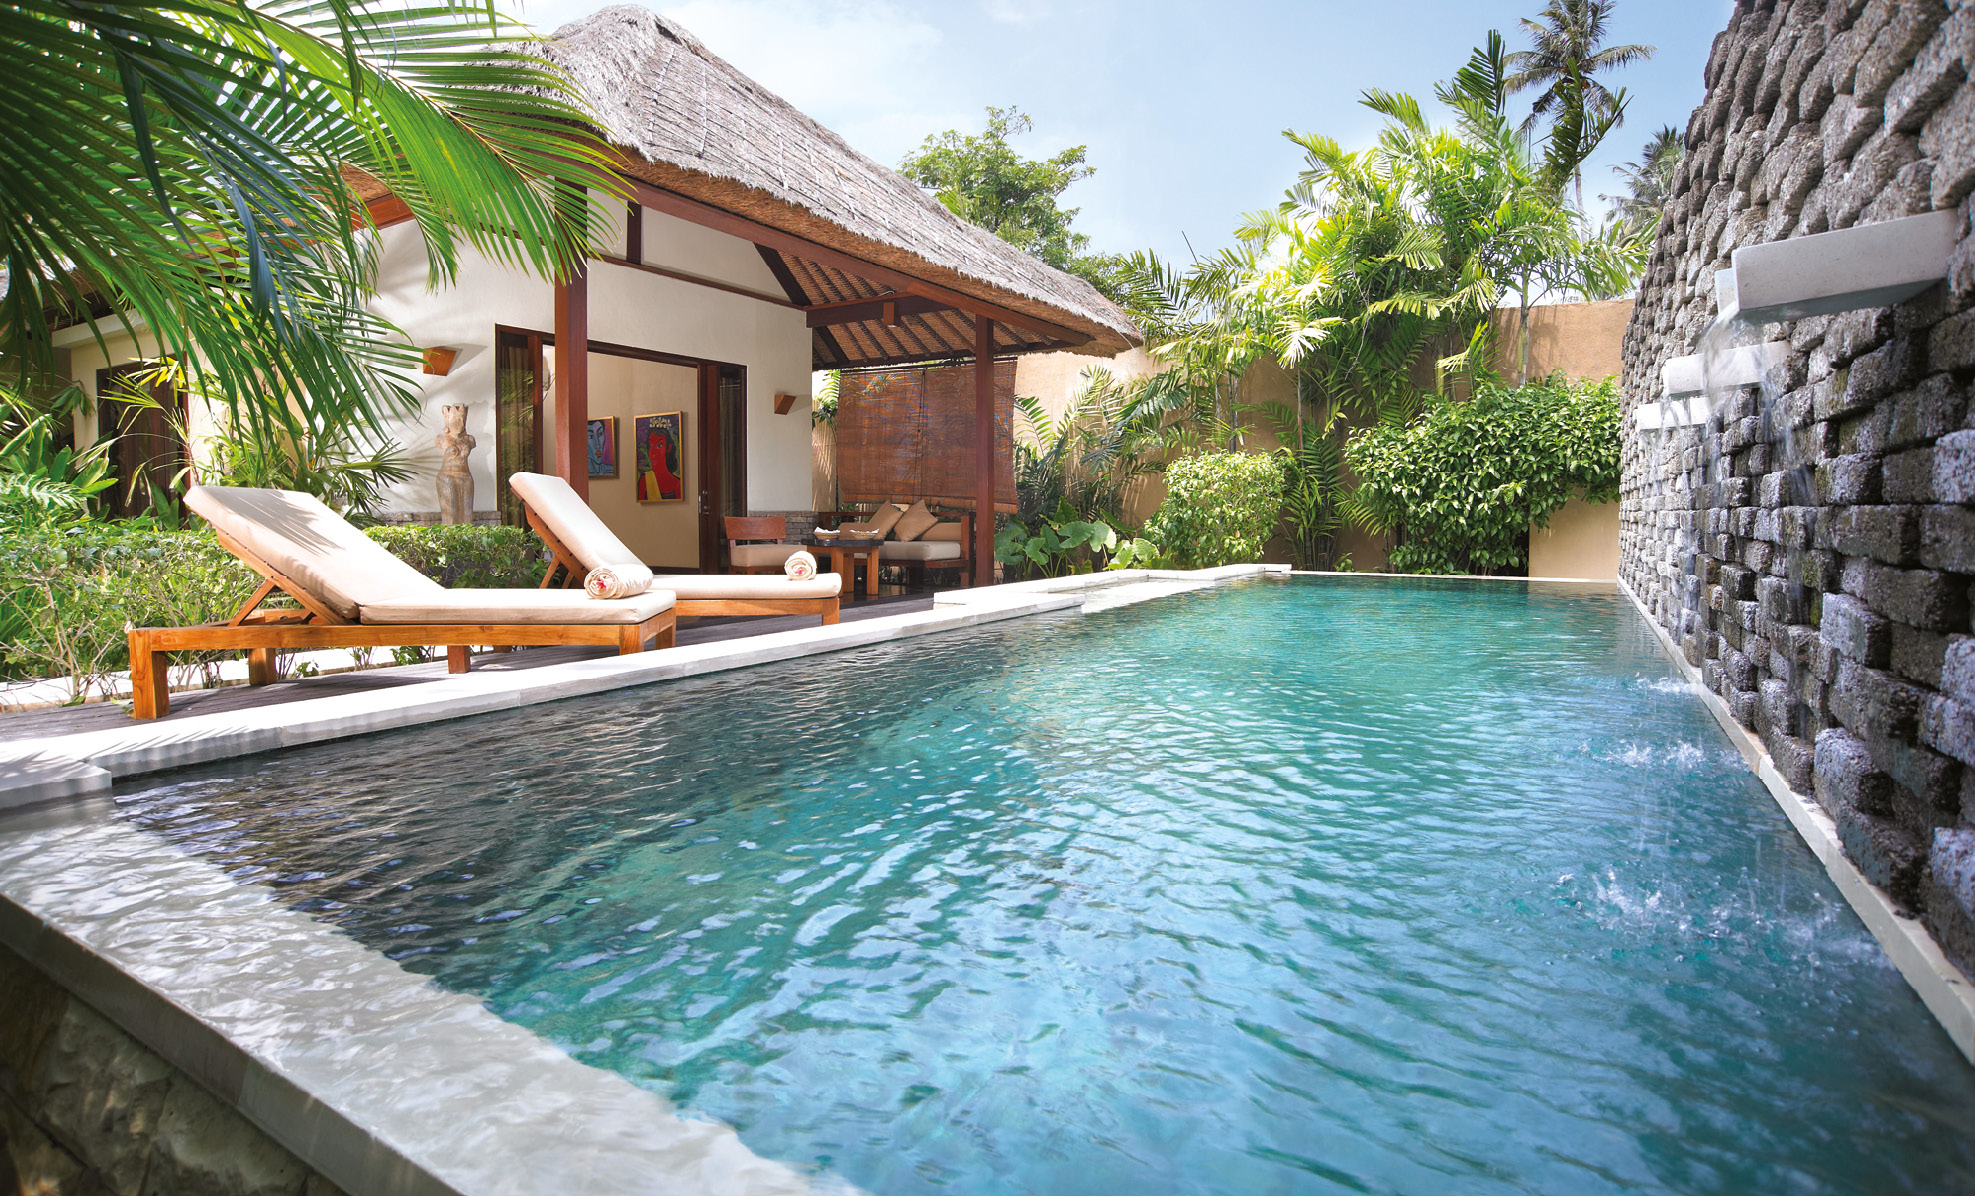 lombok qunci villas pool room villa